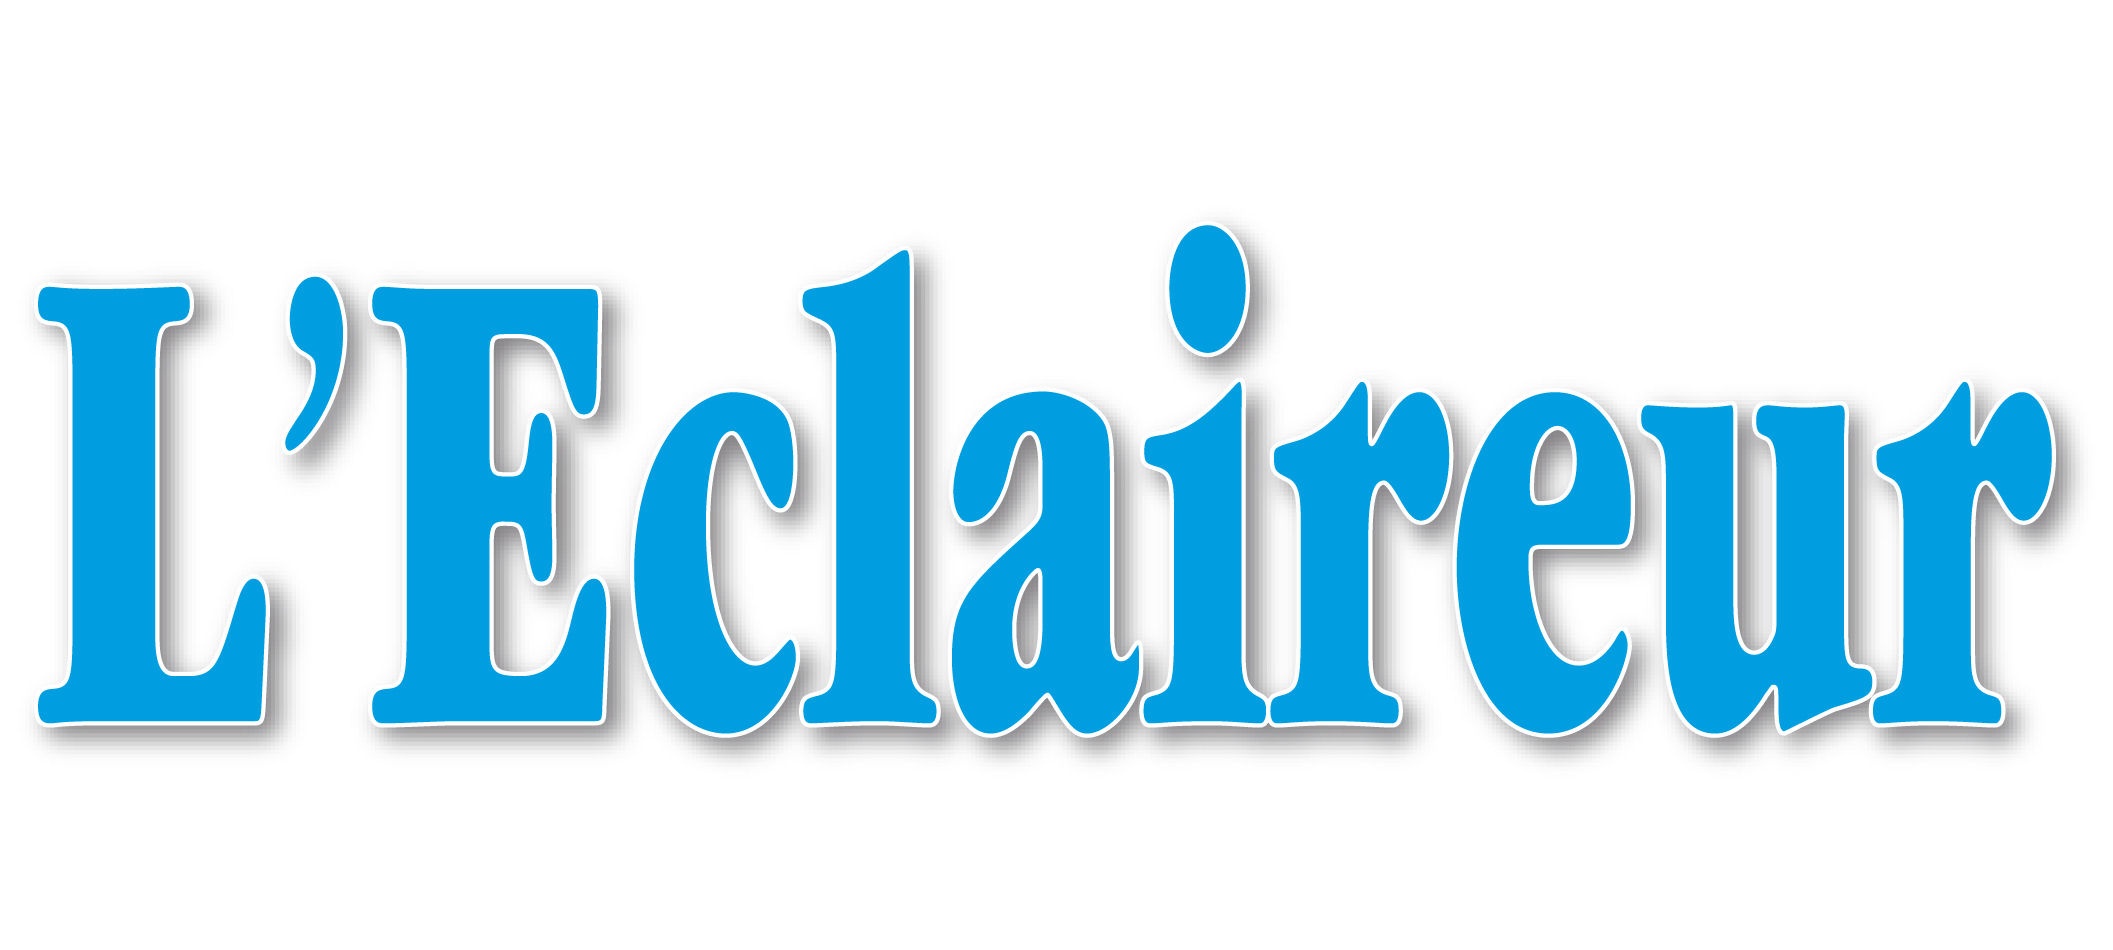 logo L'Eclaireur de Chateaubriant